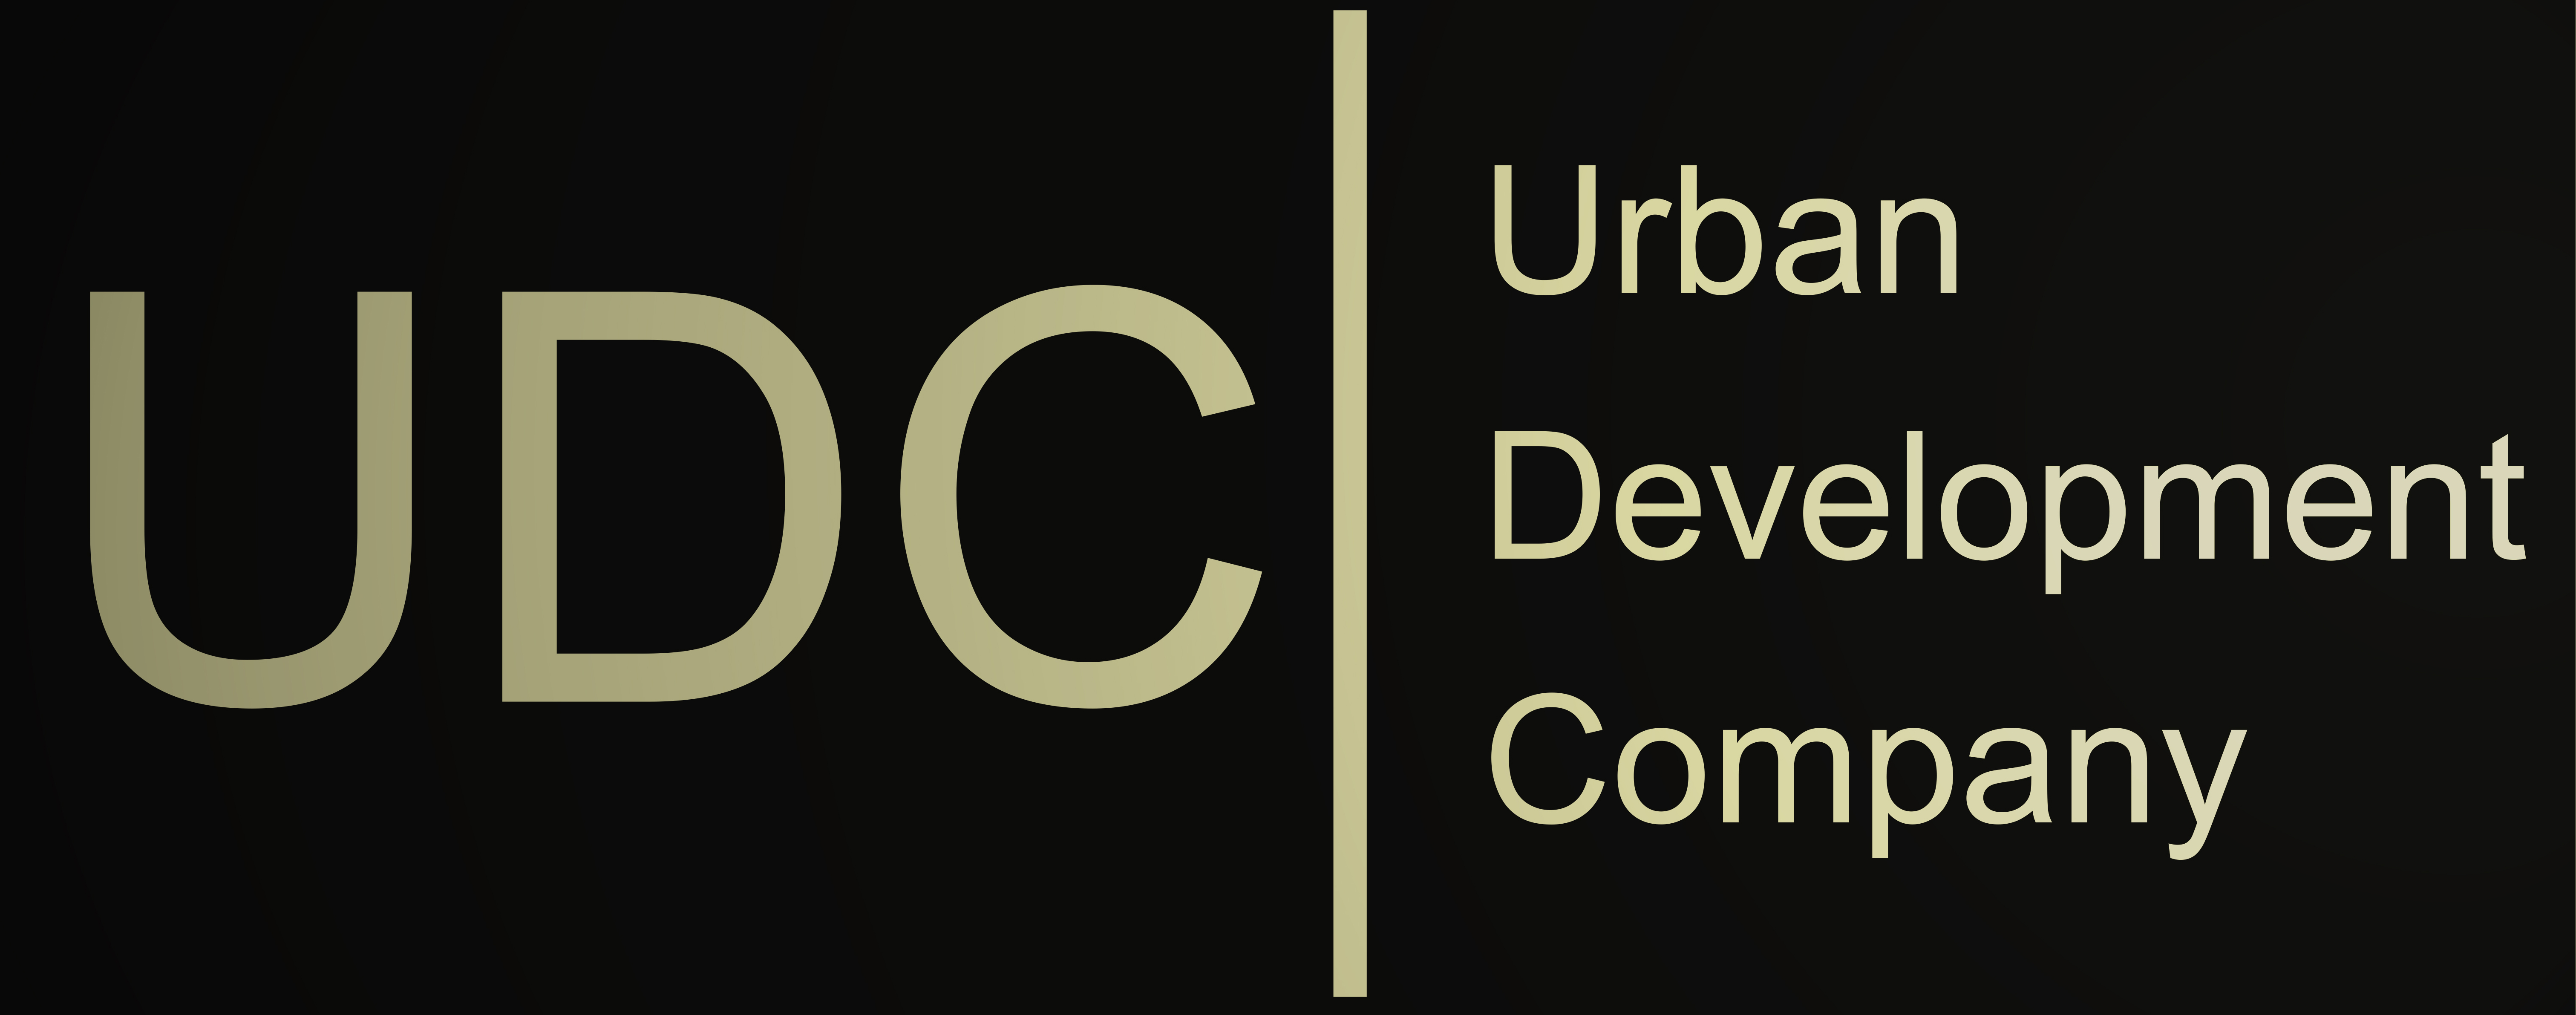 UDC-Development